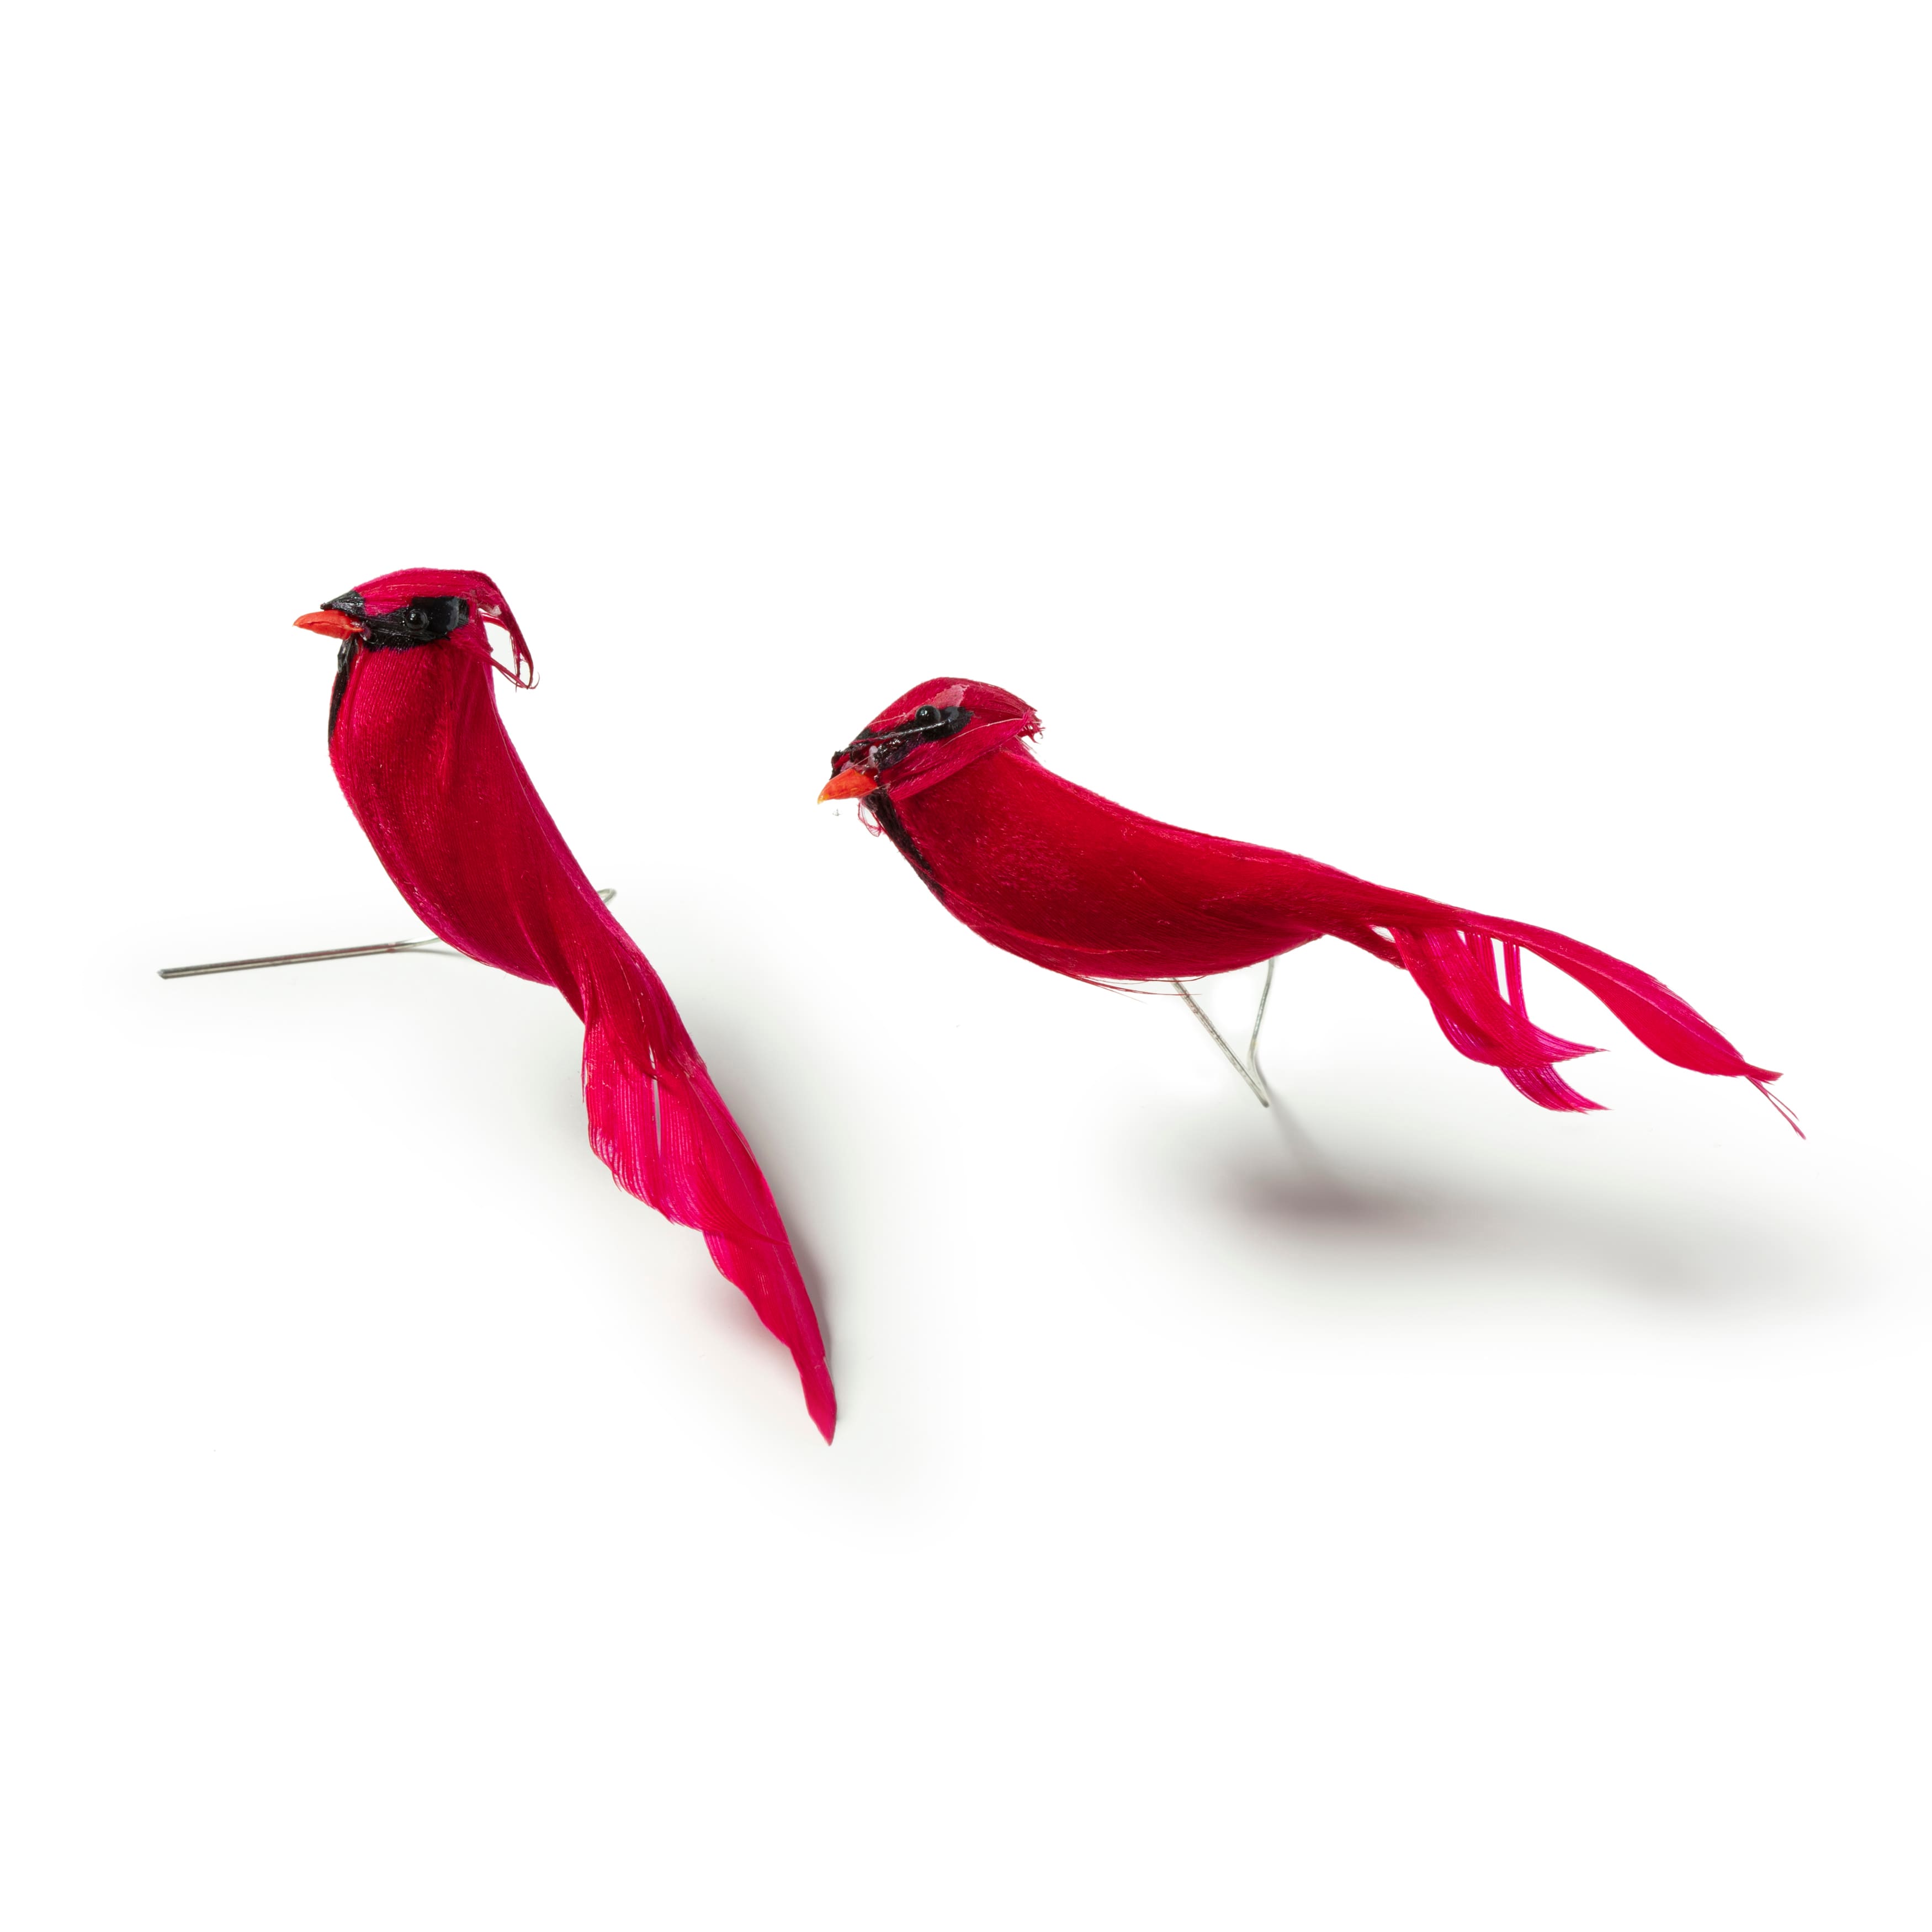 METAL MAGNET Large Male Cardinal Bird Birds Cardinals Fall Season MAGNET 